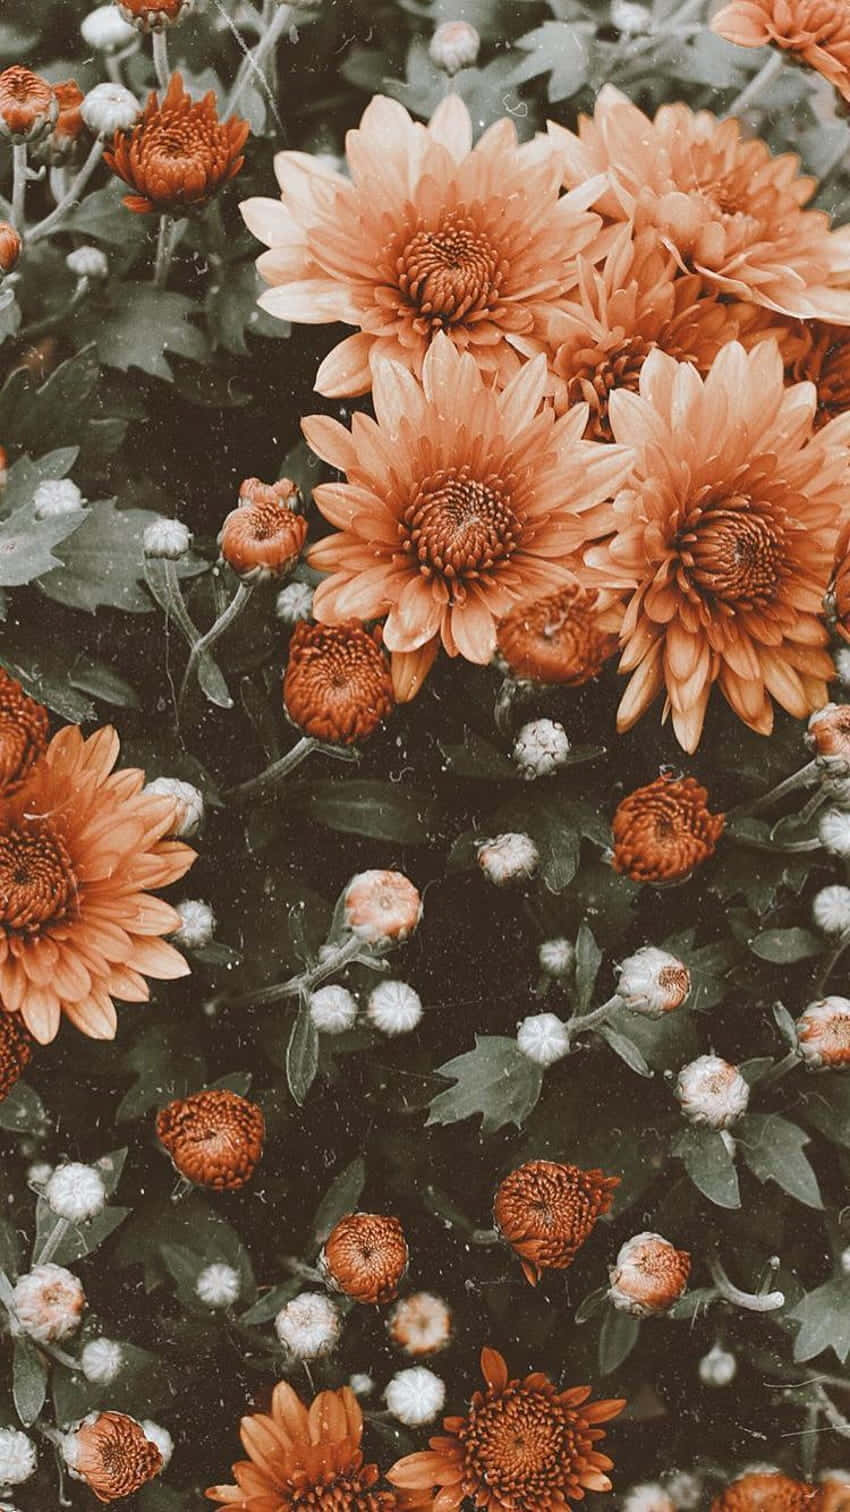 Imagenuna Explosión De Color Con Esta Encantadora Disposición De Flores Vintage.